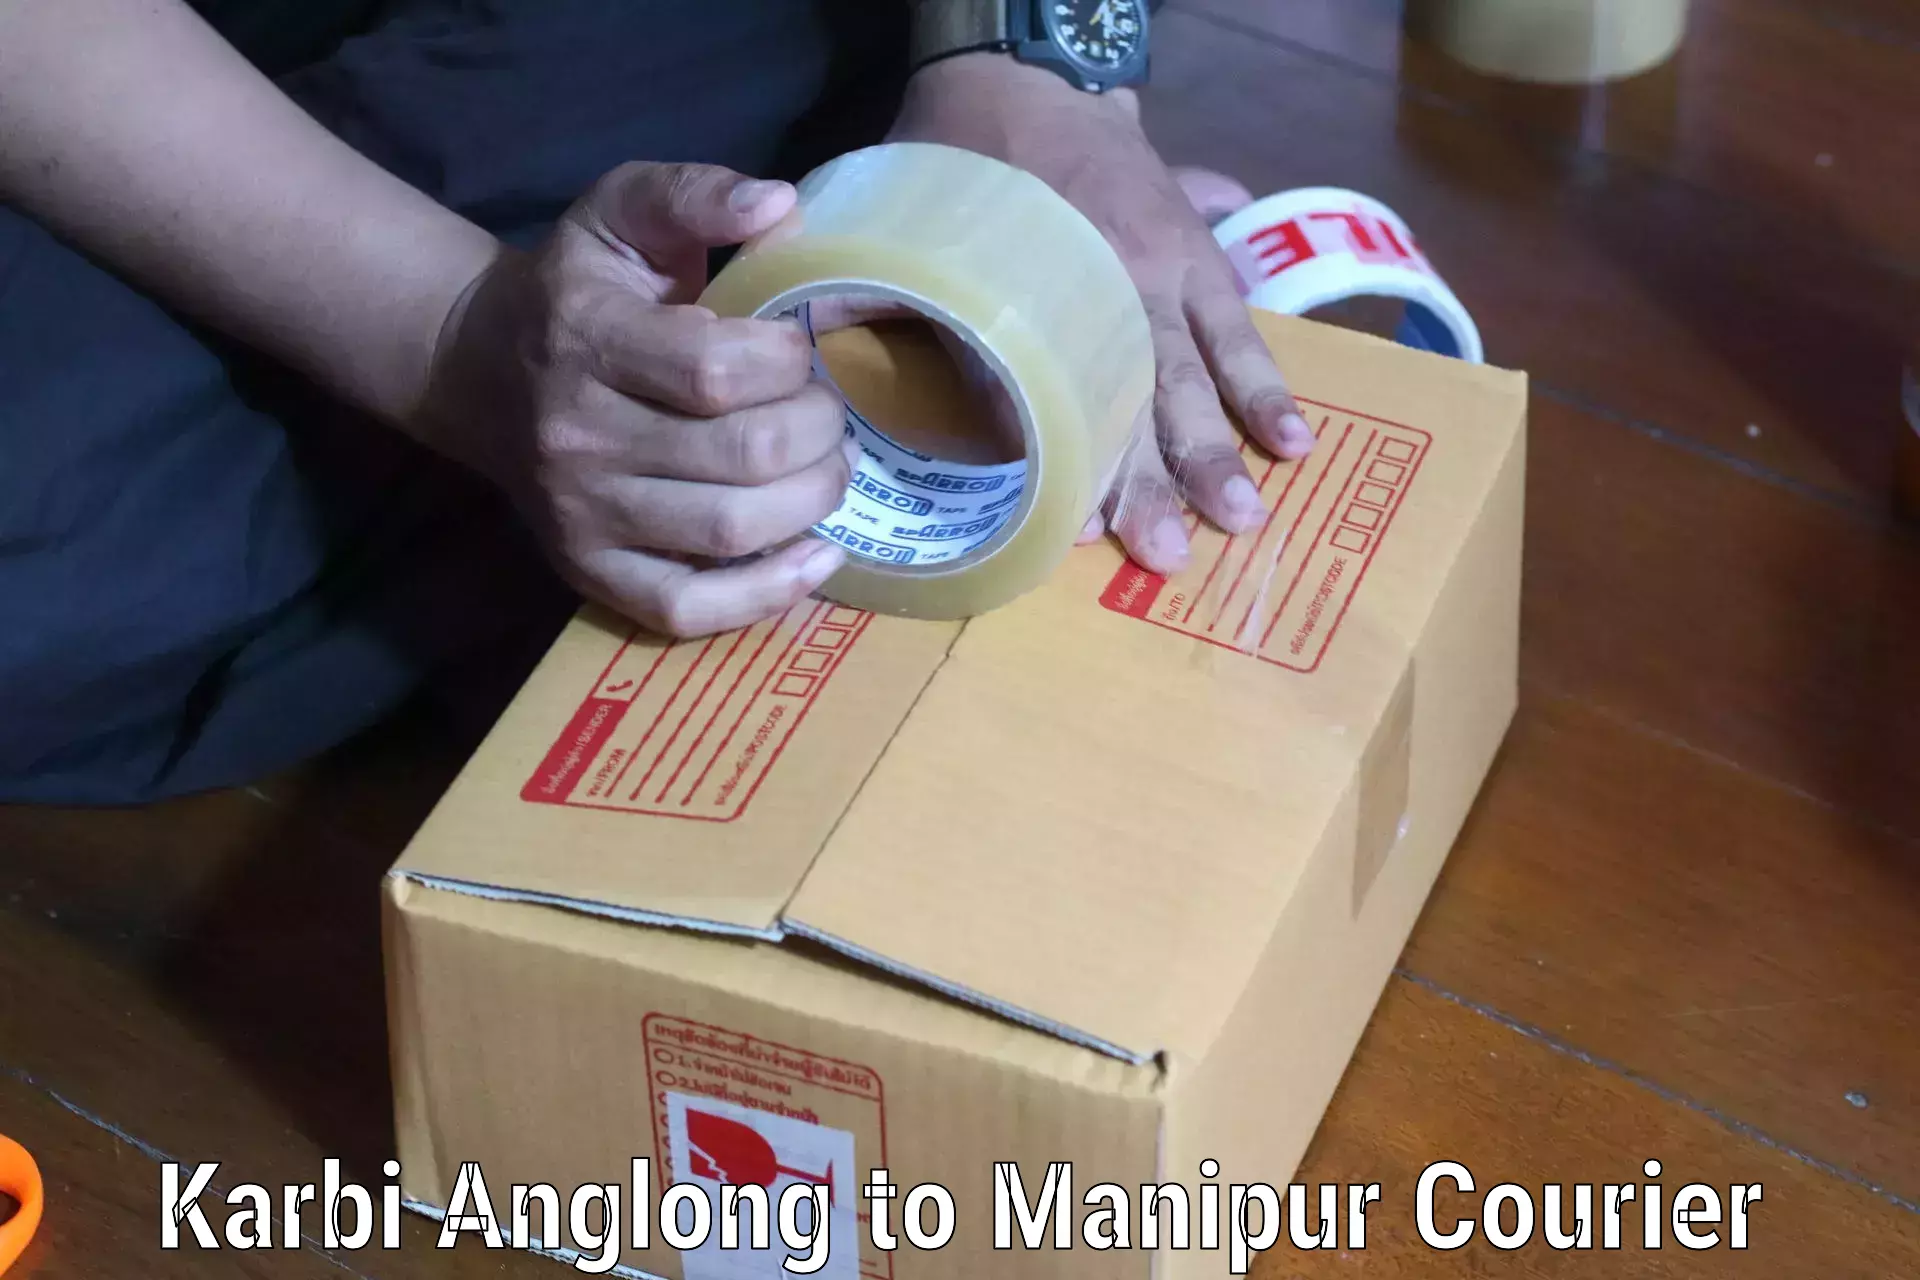 Professional courier handling Karbi Anglong to Thoubal